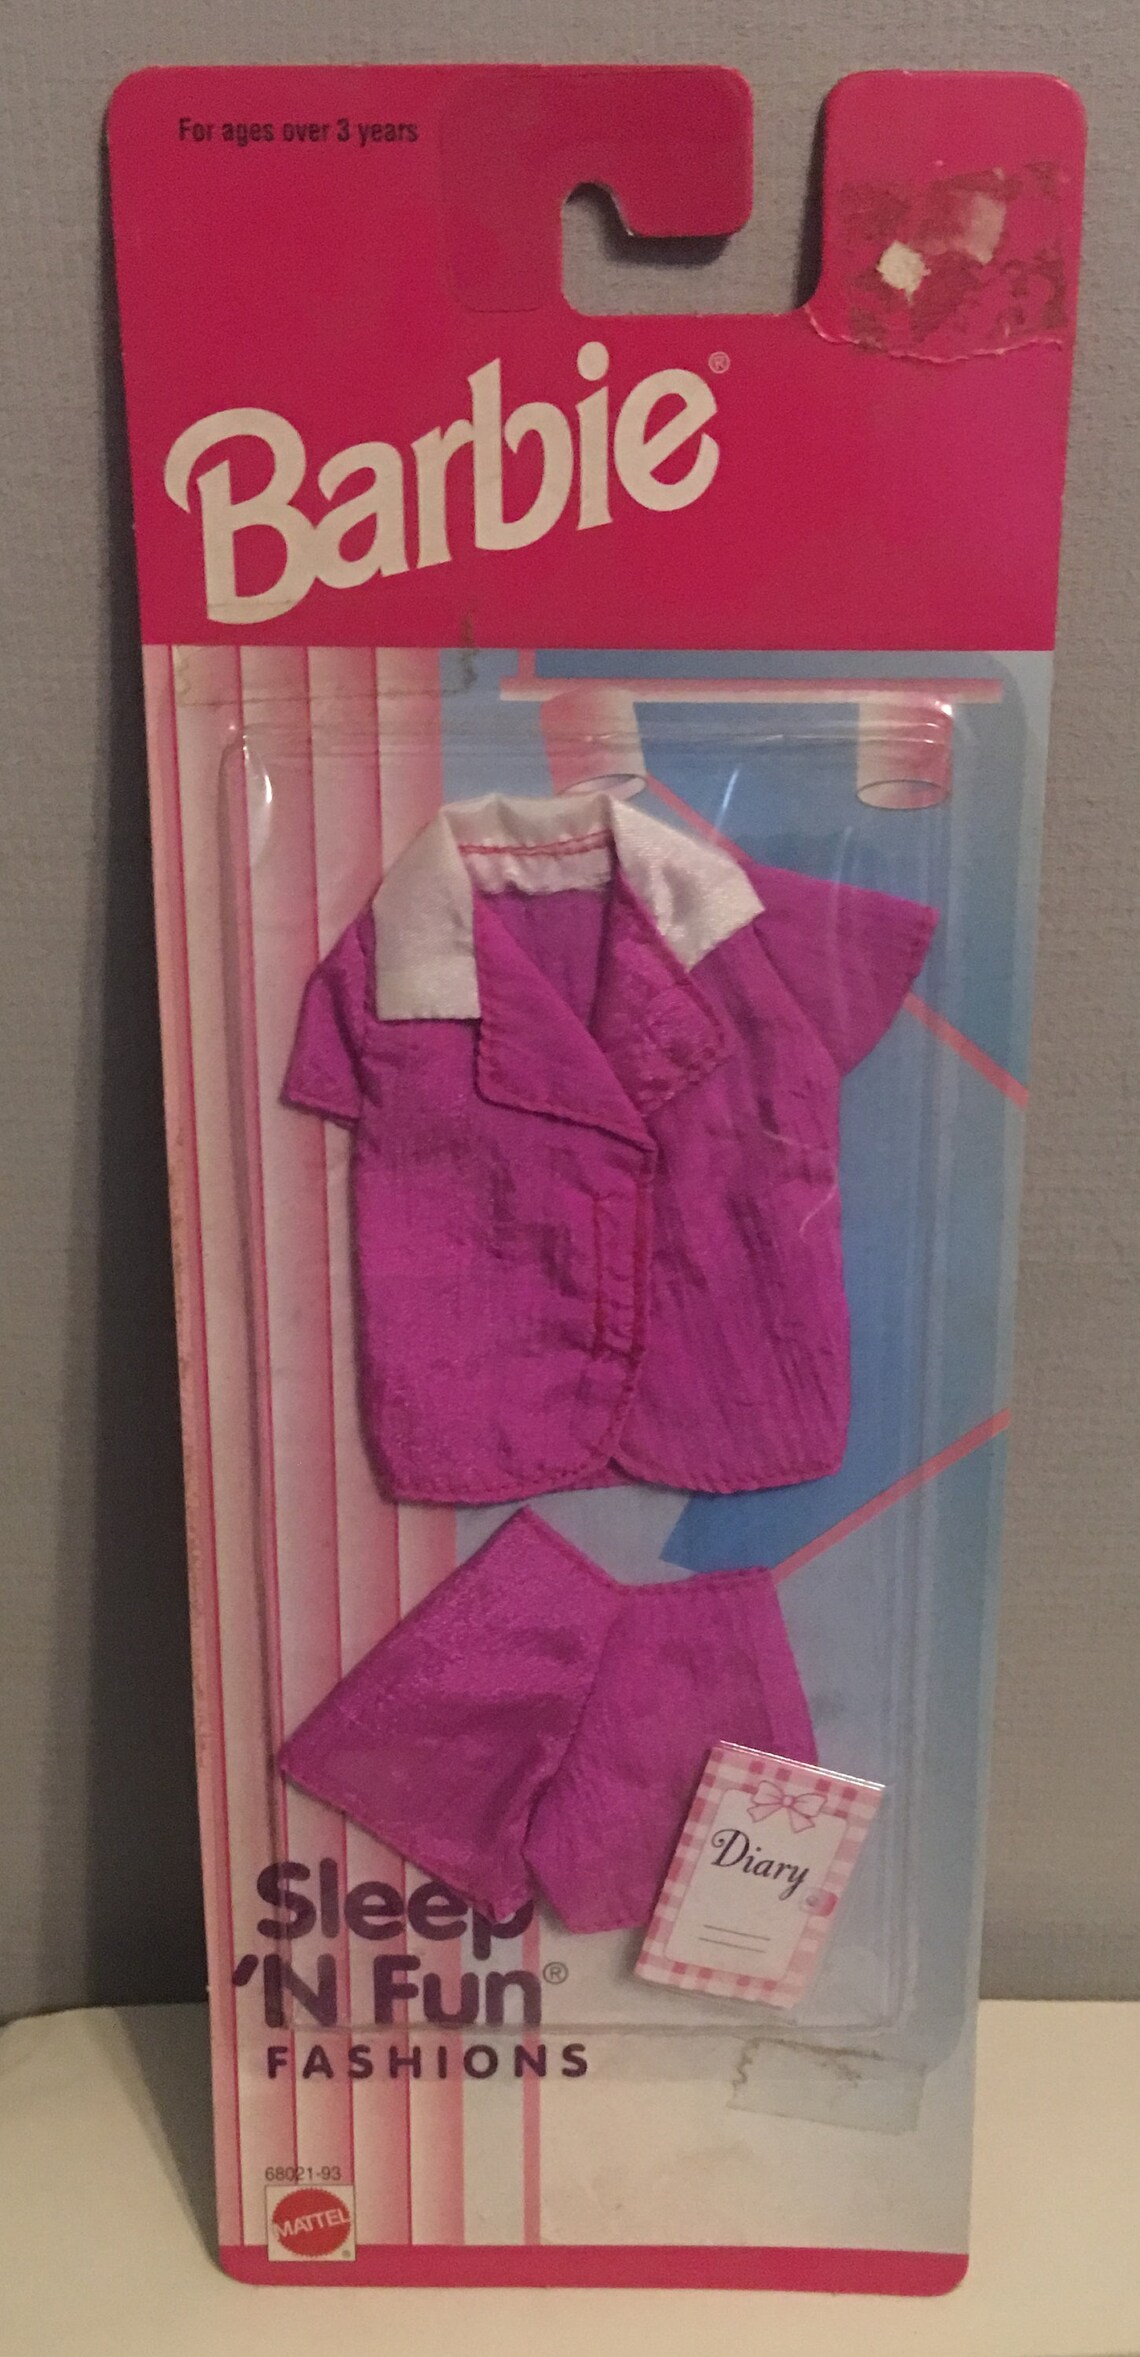 Barbie Sleep N Fun Fashions Pajama Set and Diary Fashions - Etsy